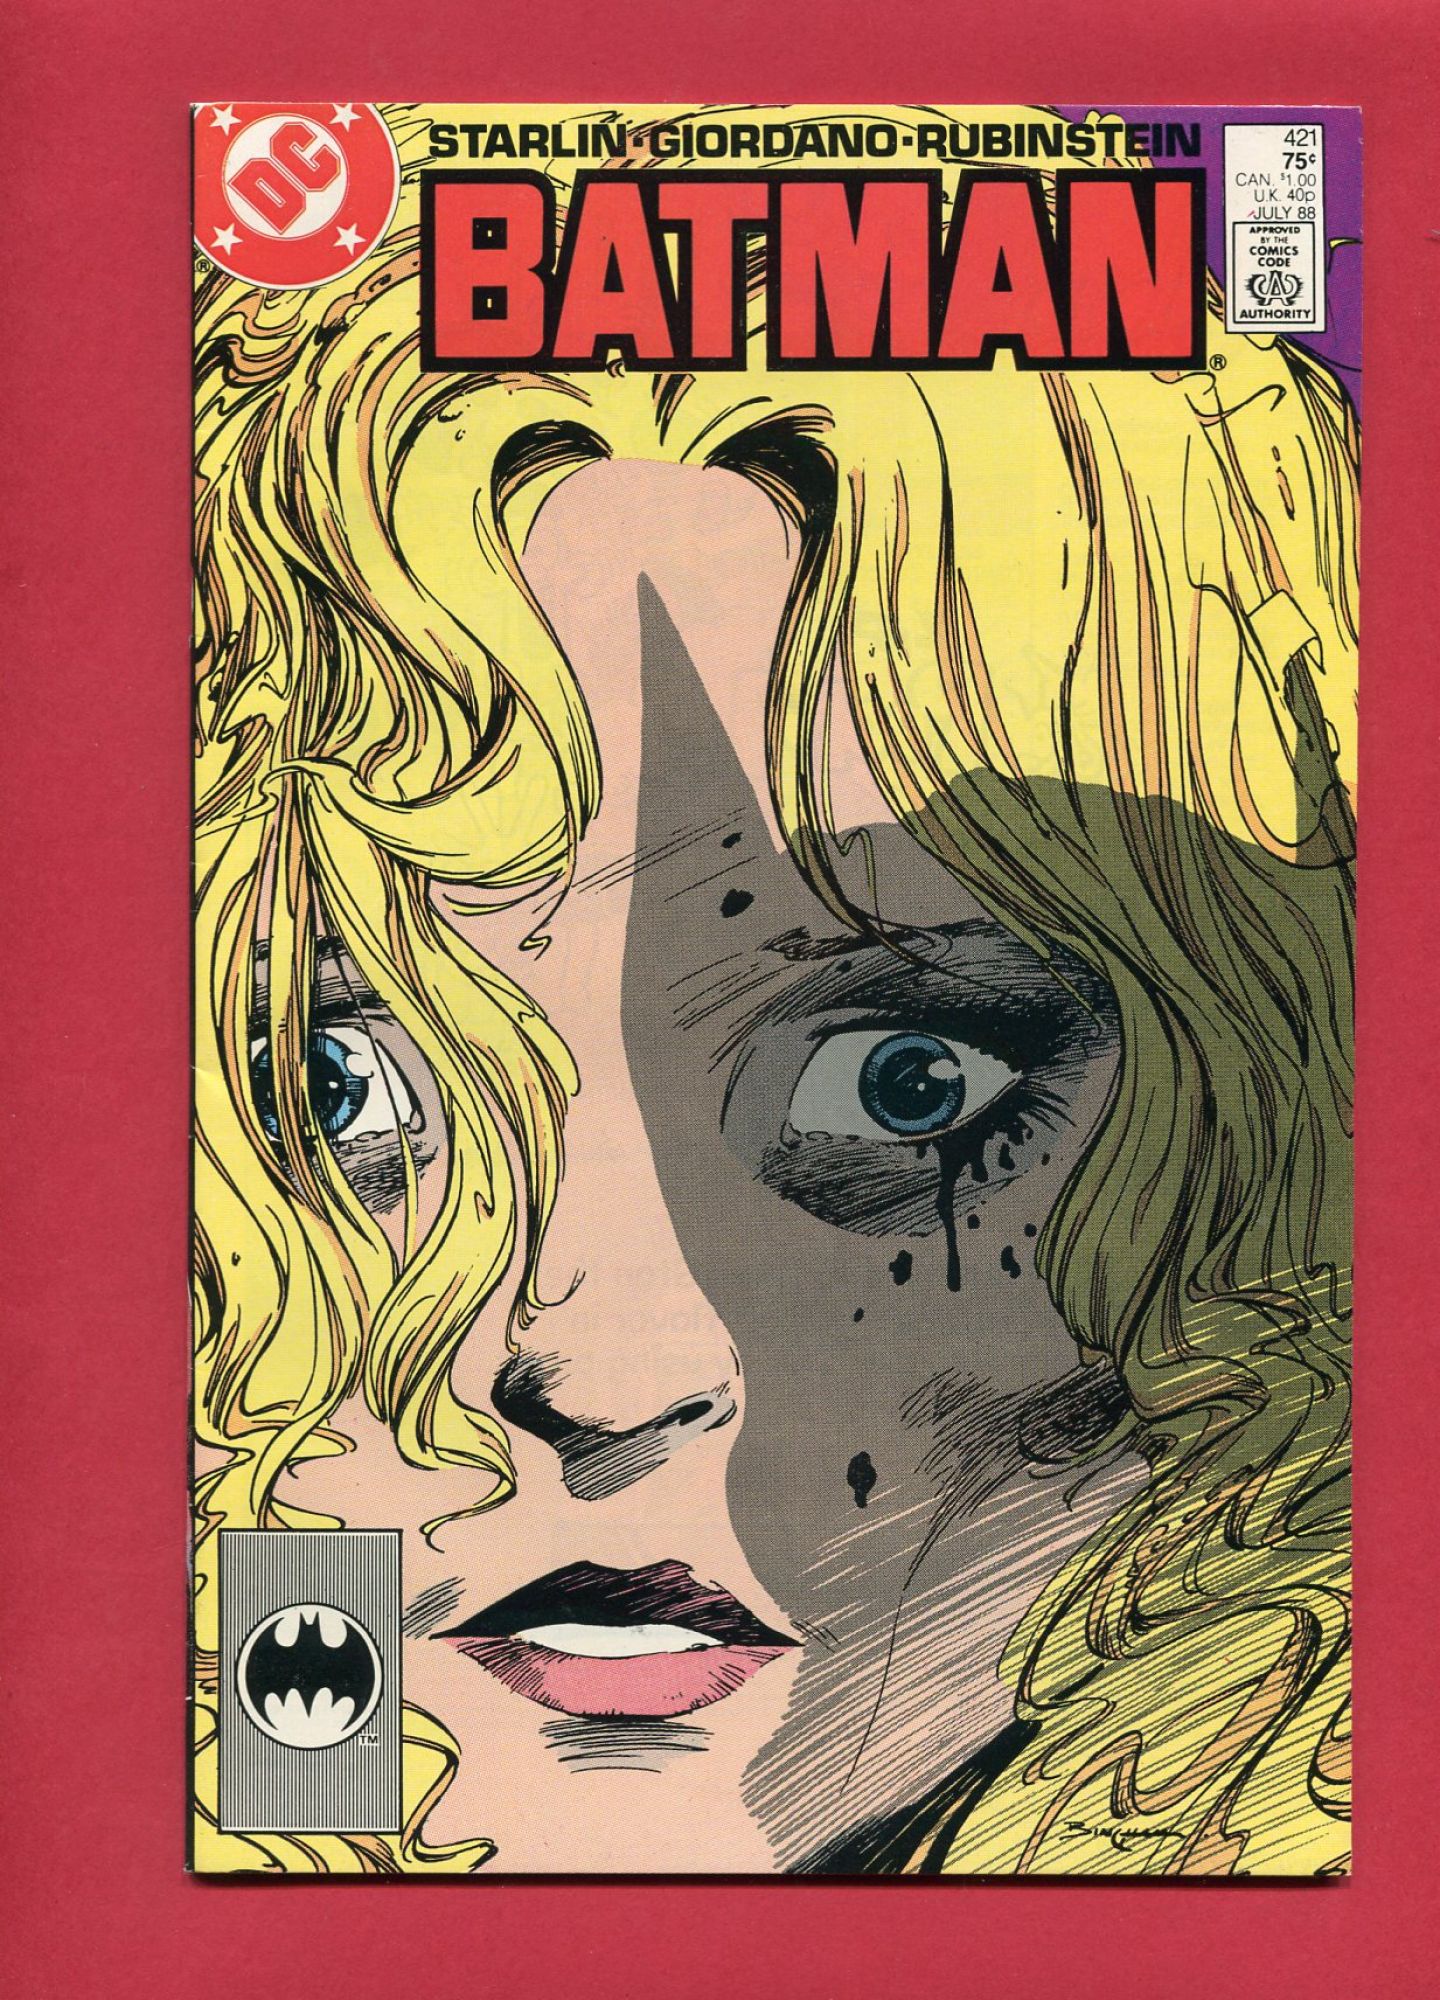 Batman #421, Jul 1988, 9.2 NM-